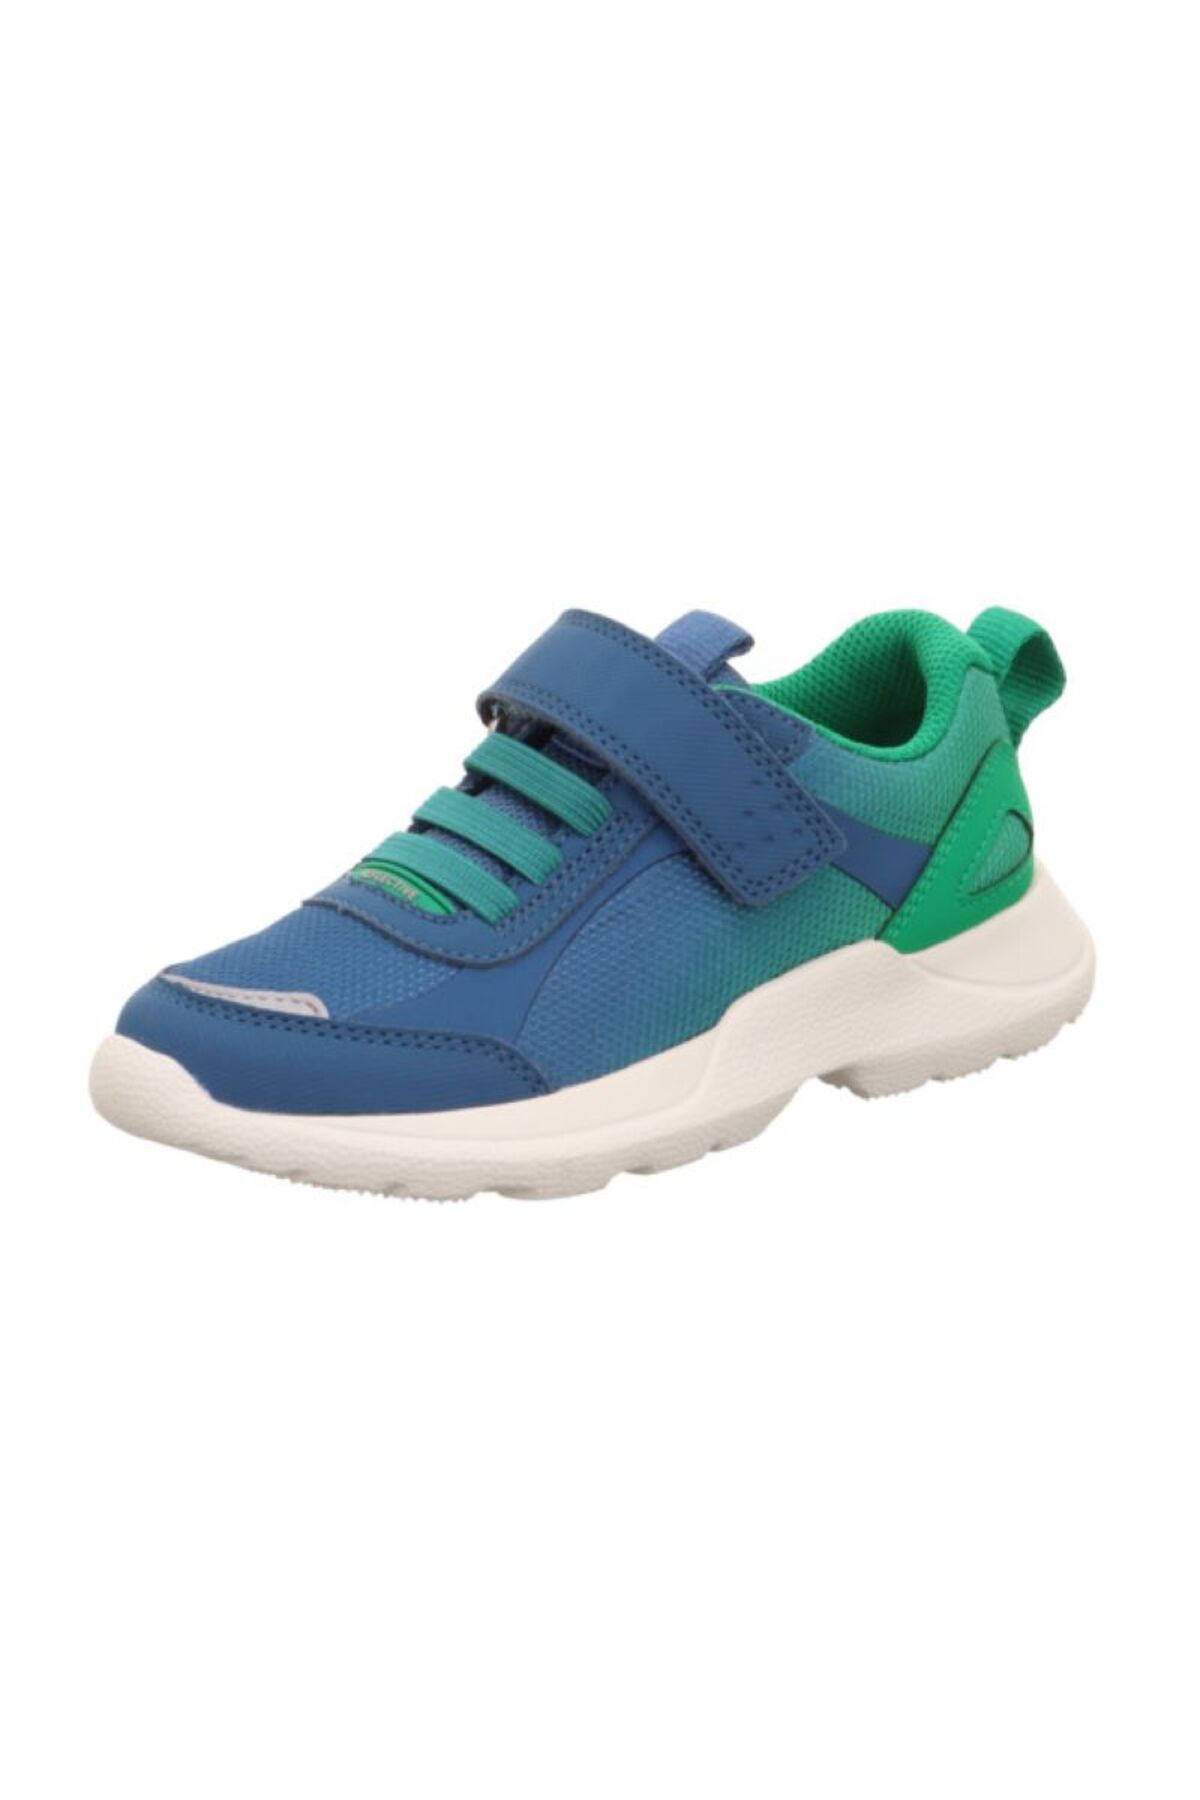 Superfit RUSH - Mavi /Yeşil Erkek Çocuk Spor Ayakkabı